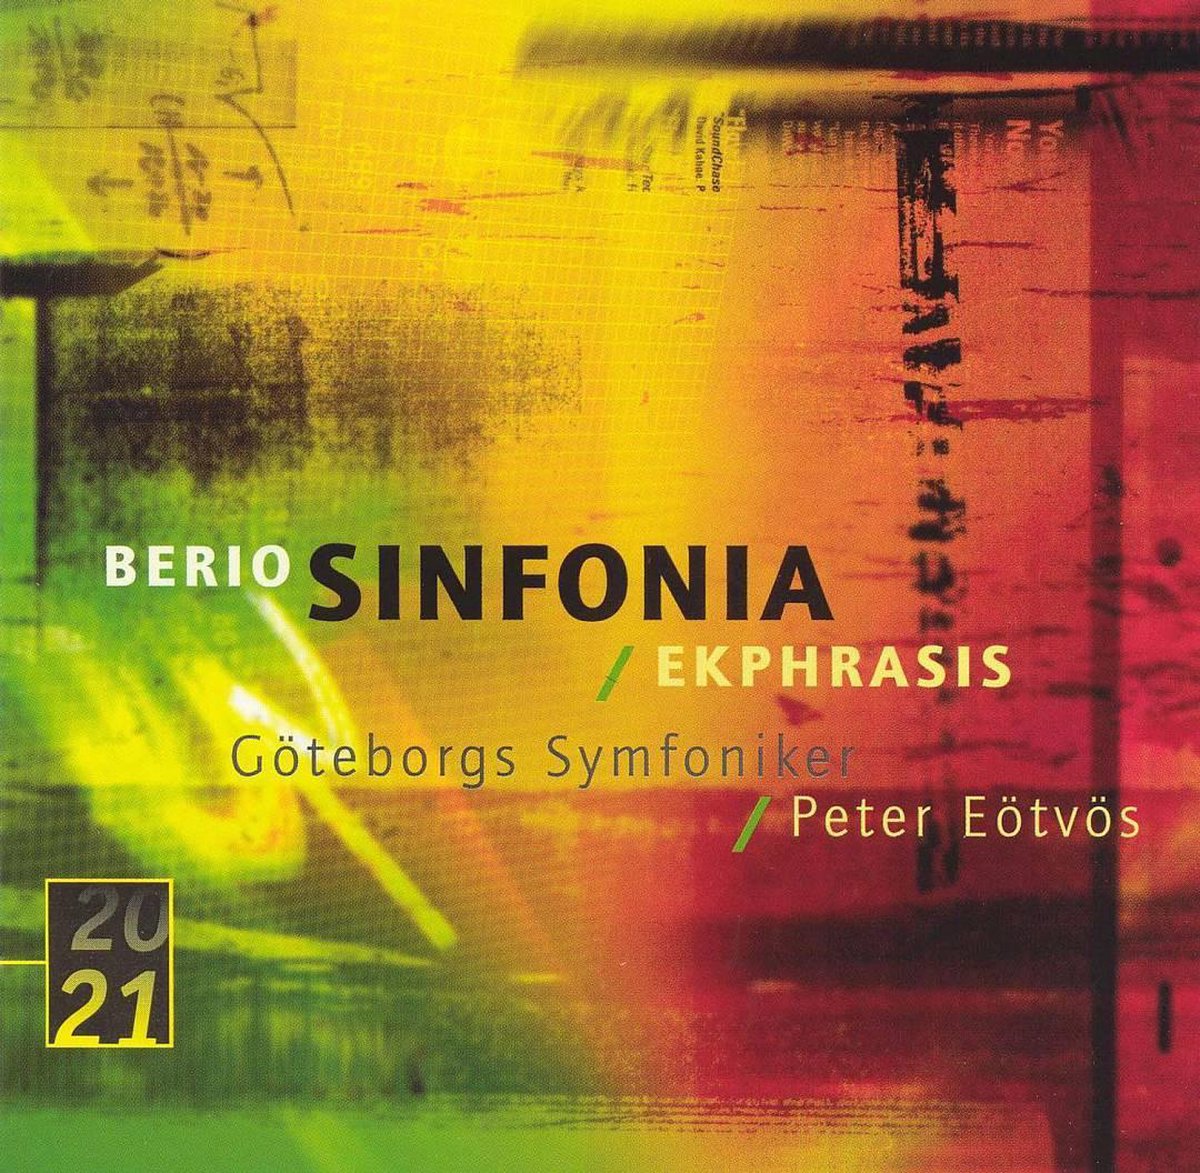 Audio Cd Luciano Berio - Symp. / Ekphrasis NUOVO SIGILLATO, EDIZIONE DEL 09/06/2005 SUBITO DISPONIBILE